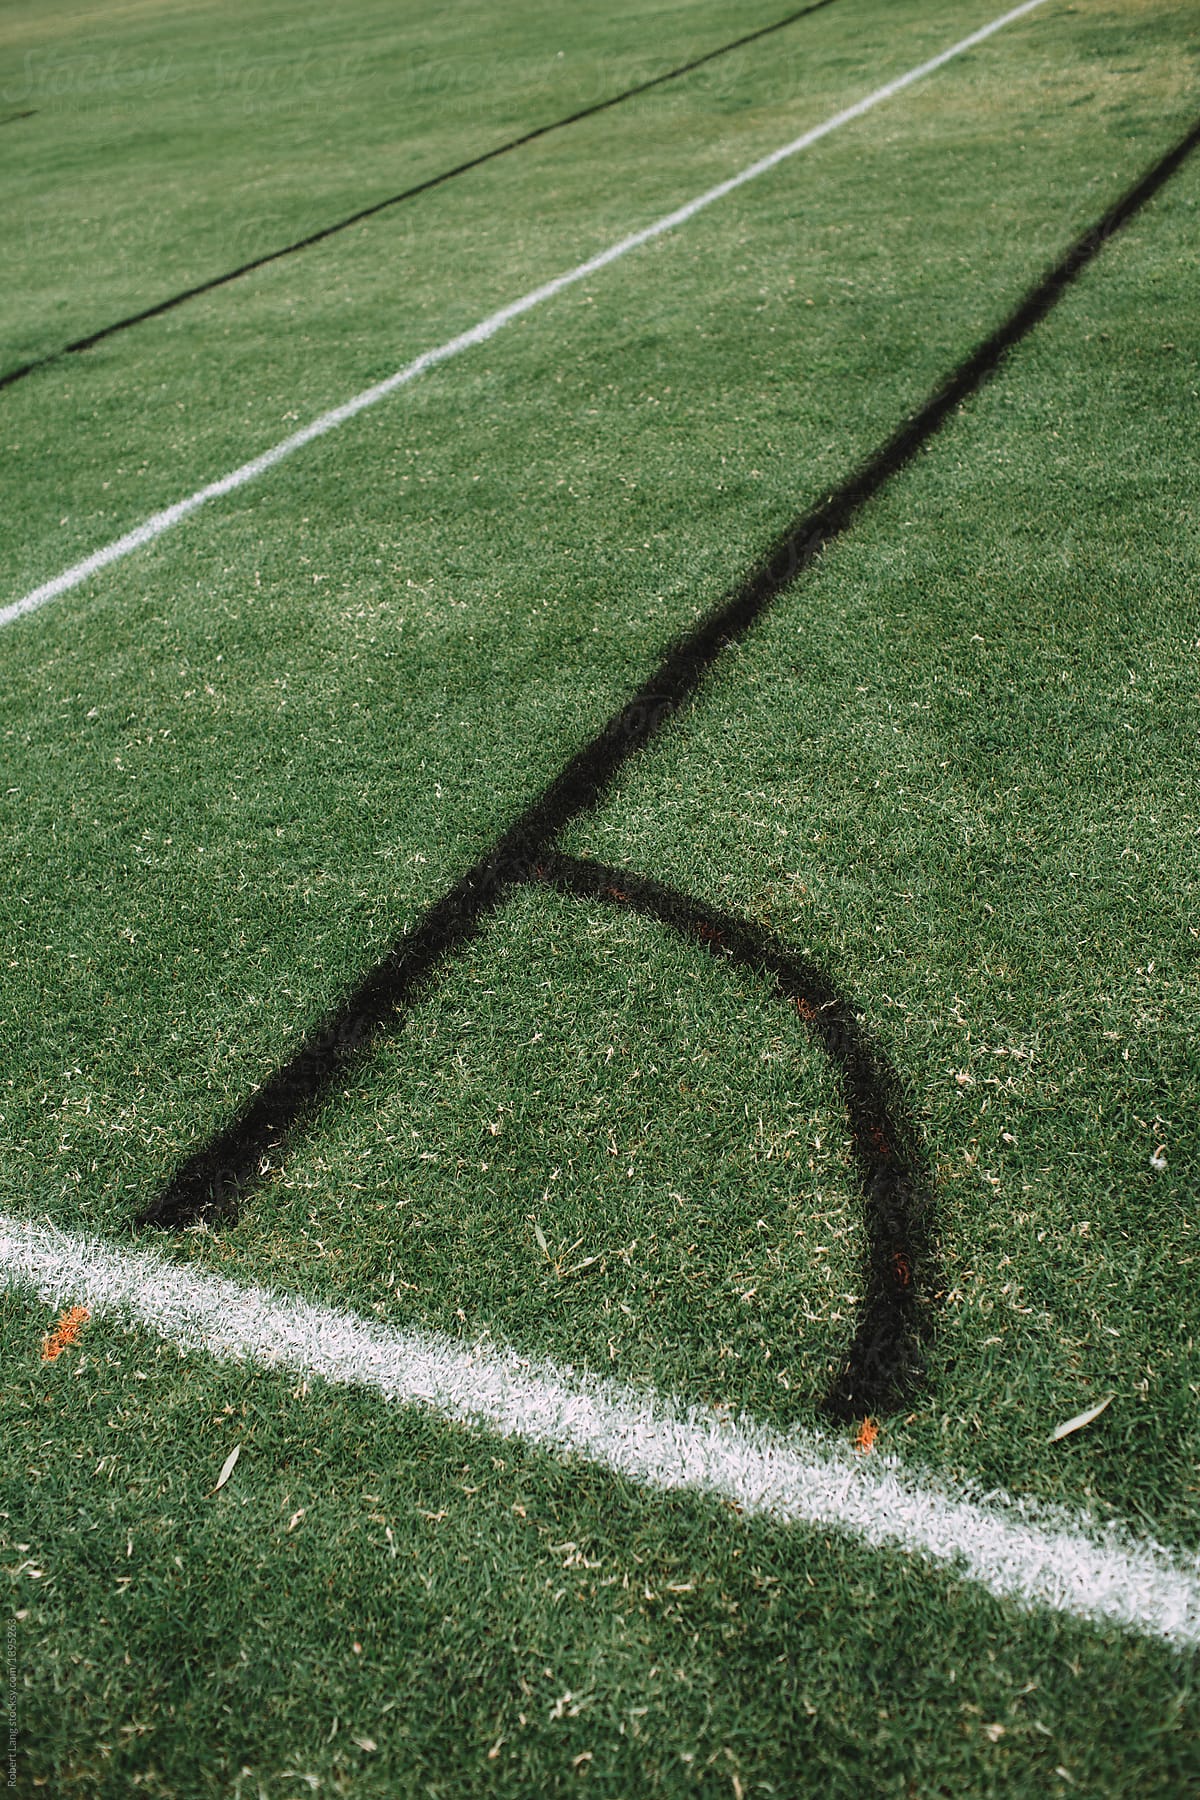 Line marking on a soccer field